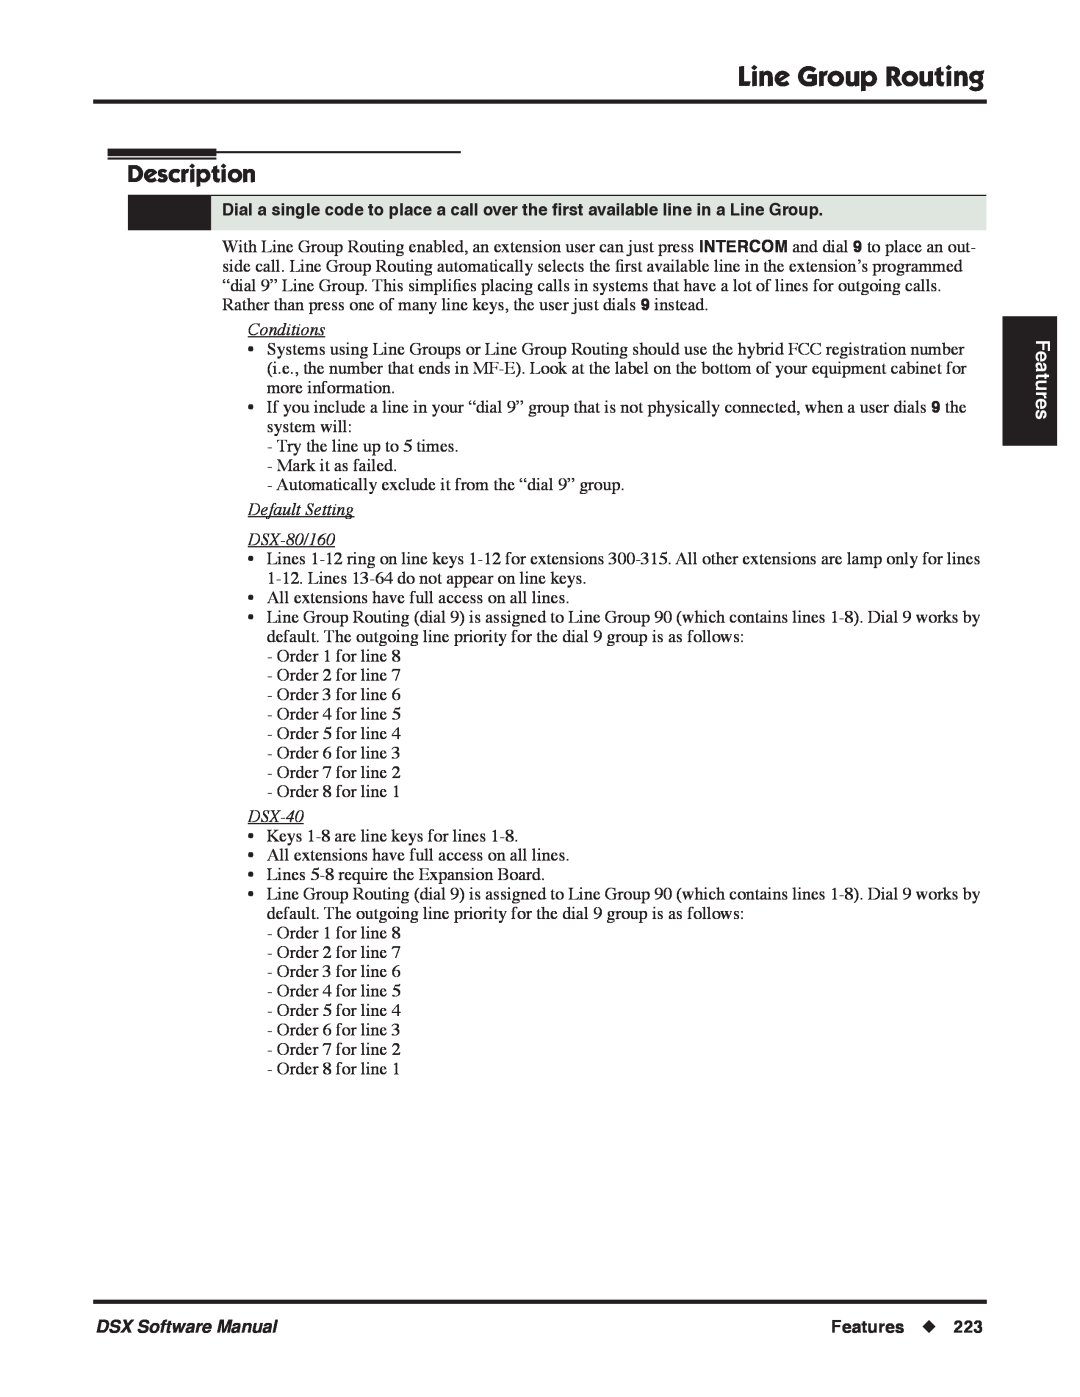 NEC P Line Group Routing, Description, Features, Conditions, Default Setting DSX-80/160, DSX-40, DSX Software Manual 